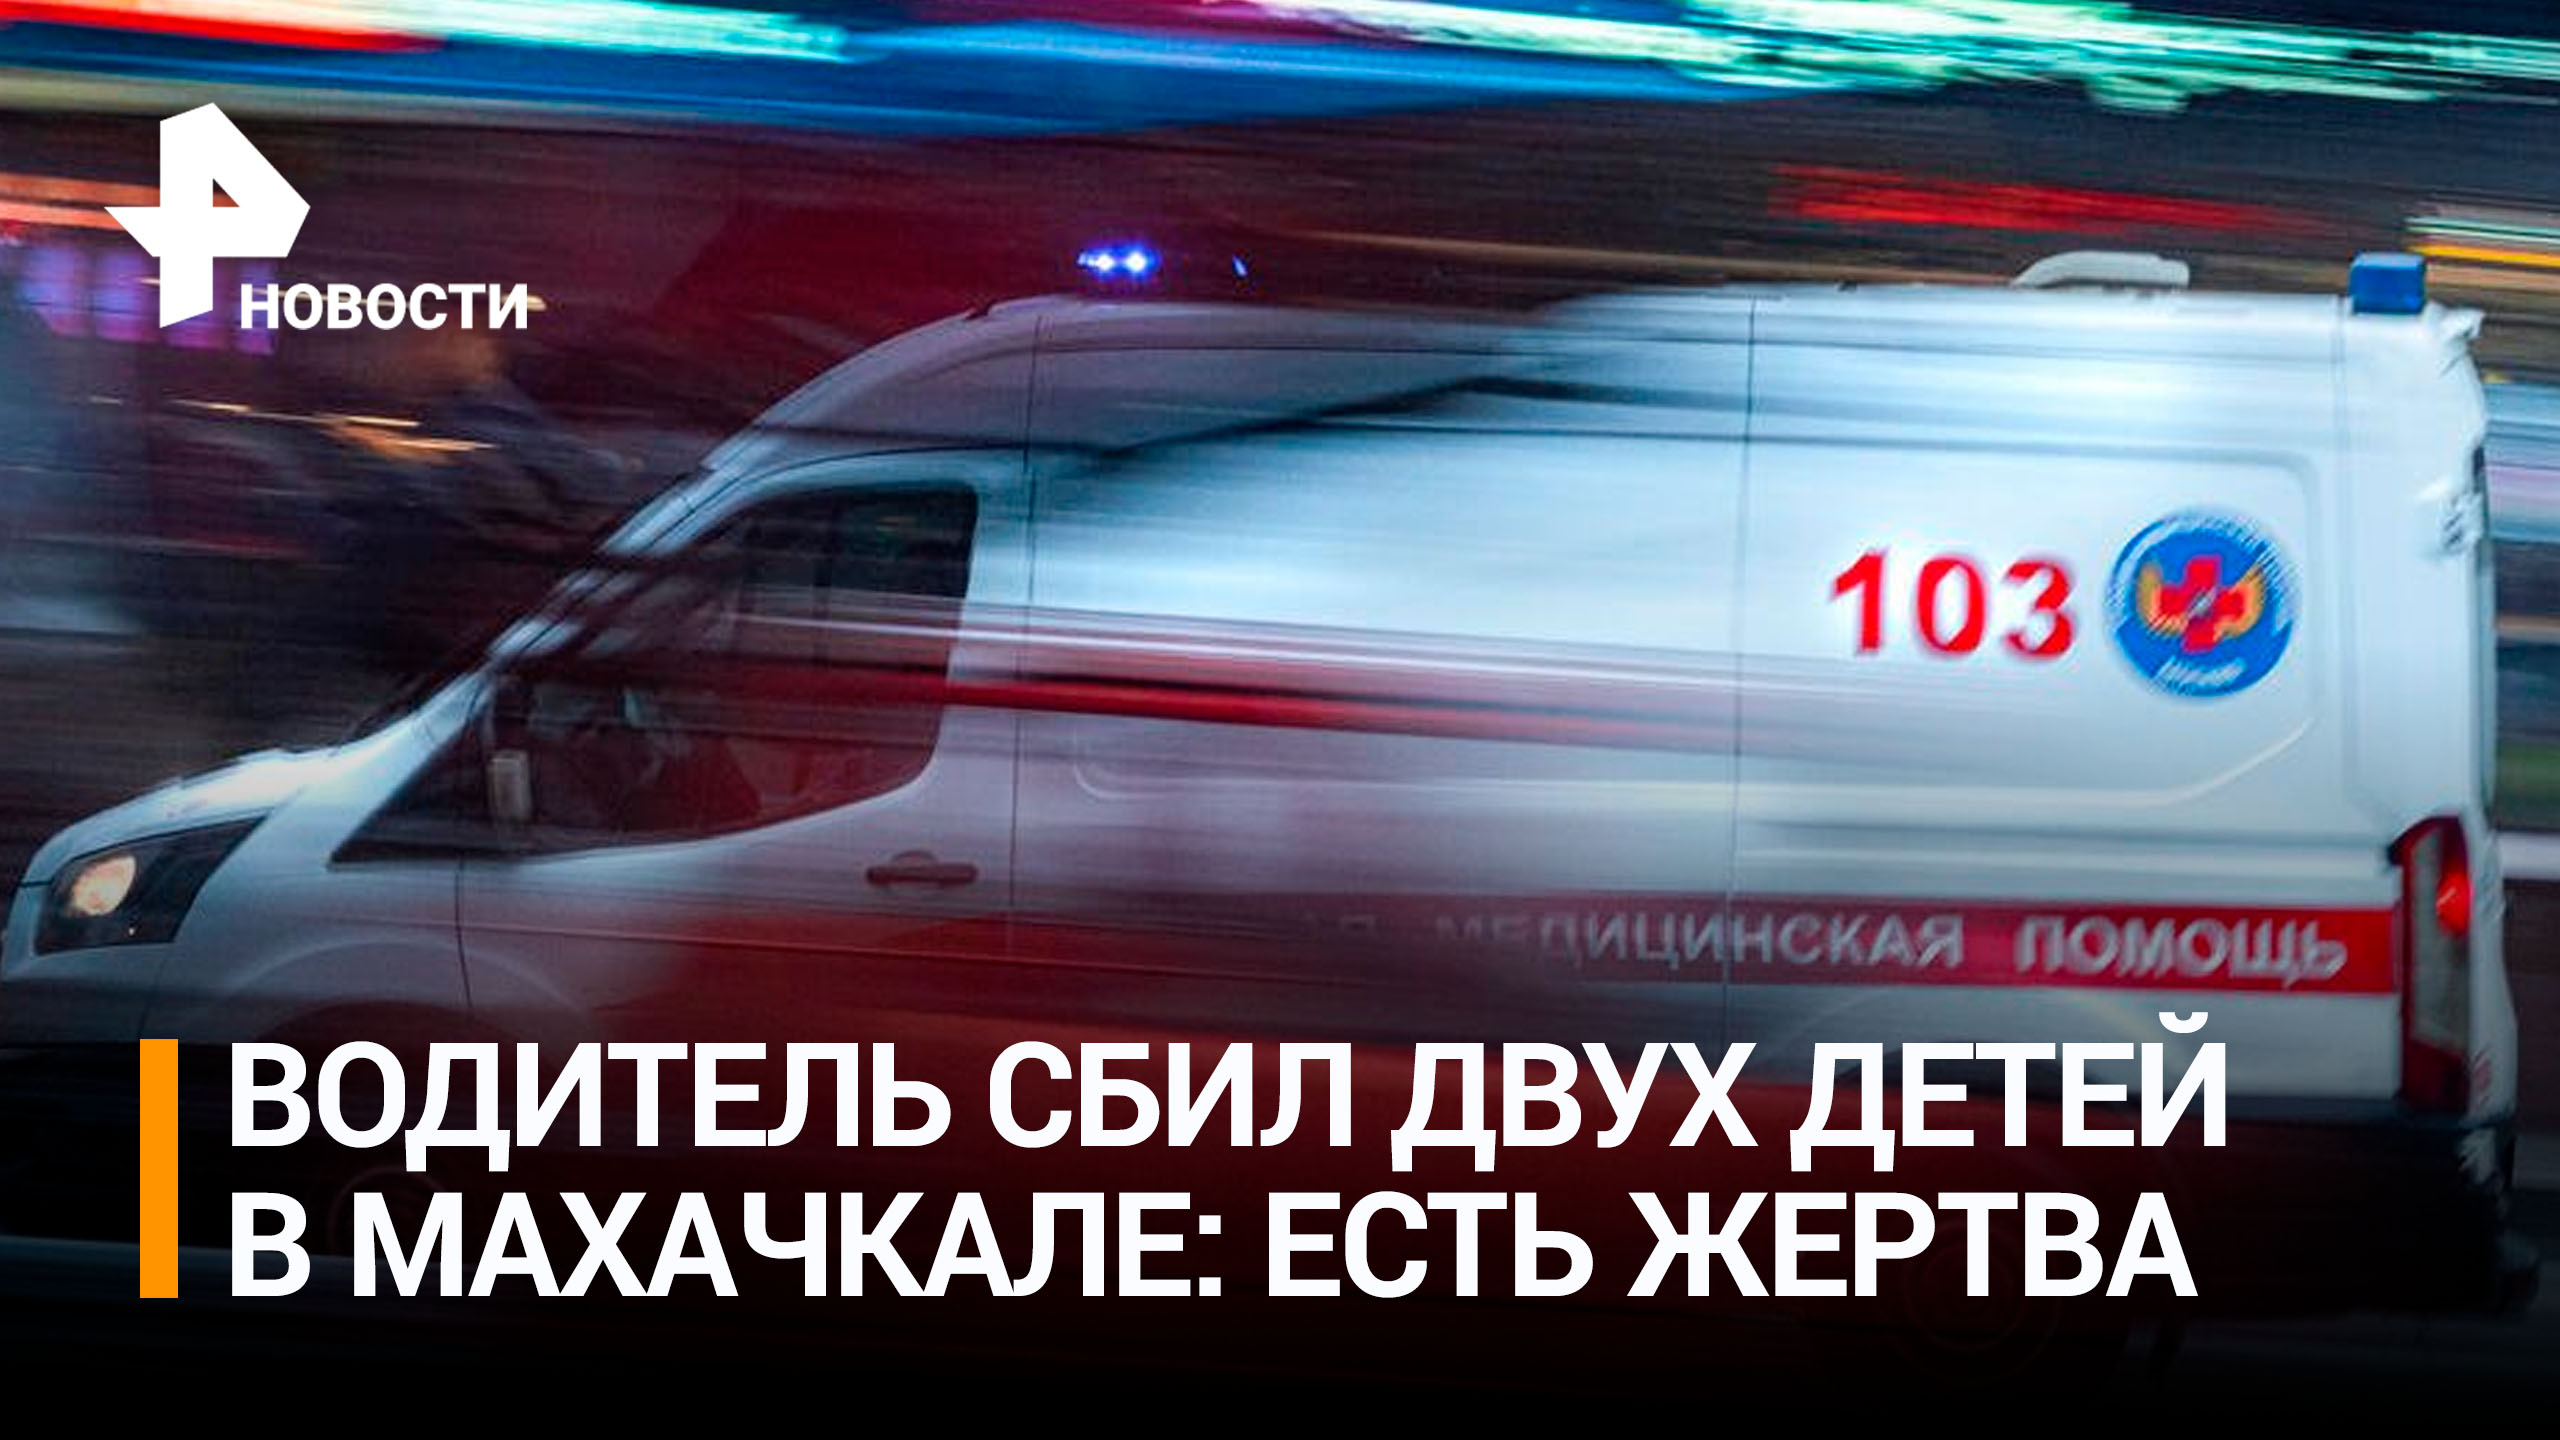 Водитель сбил двух детей в Махачкале, один ребенок погиб / РЕН Новости